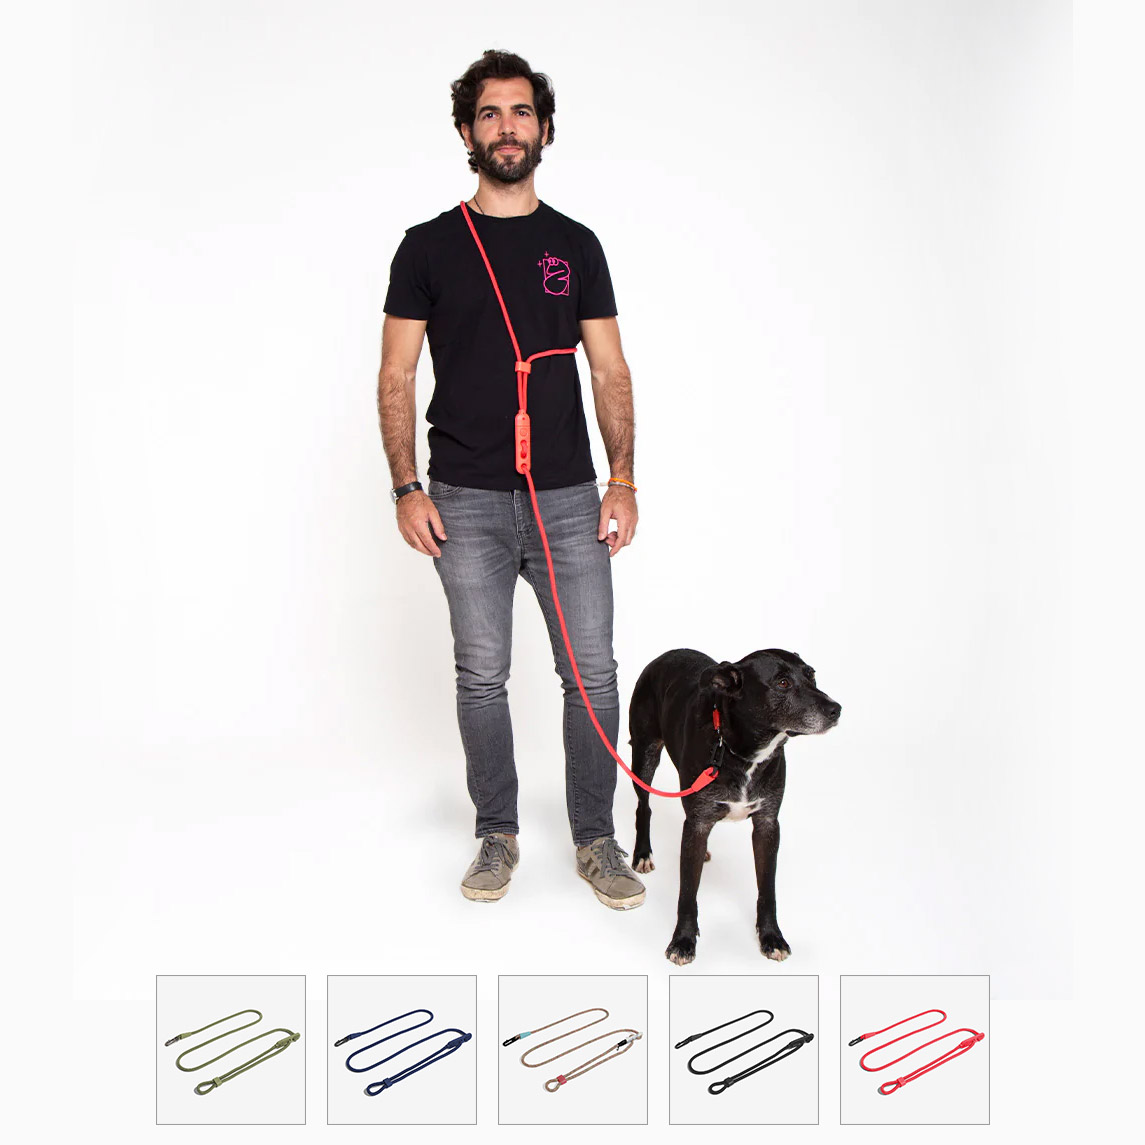 zee.dog Hands-Free Leash สายจูงแบบคล้องไหล่ คล้องบ่า ไม่ต้องคอยจับ ตัวล็อคแข็งแรง ปรับระดับความกว้างยาวได้ง่าย ปรับความยาวได้ 1.2 - 2.4m